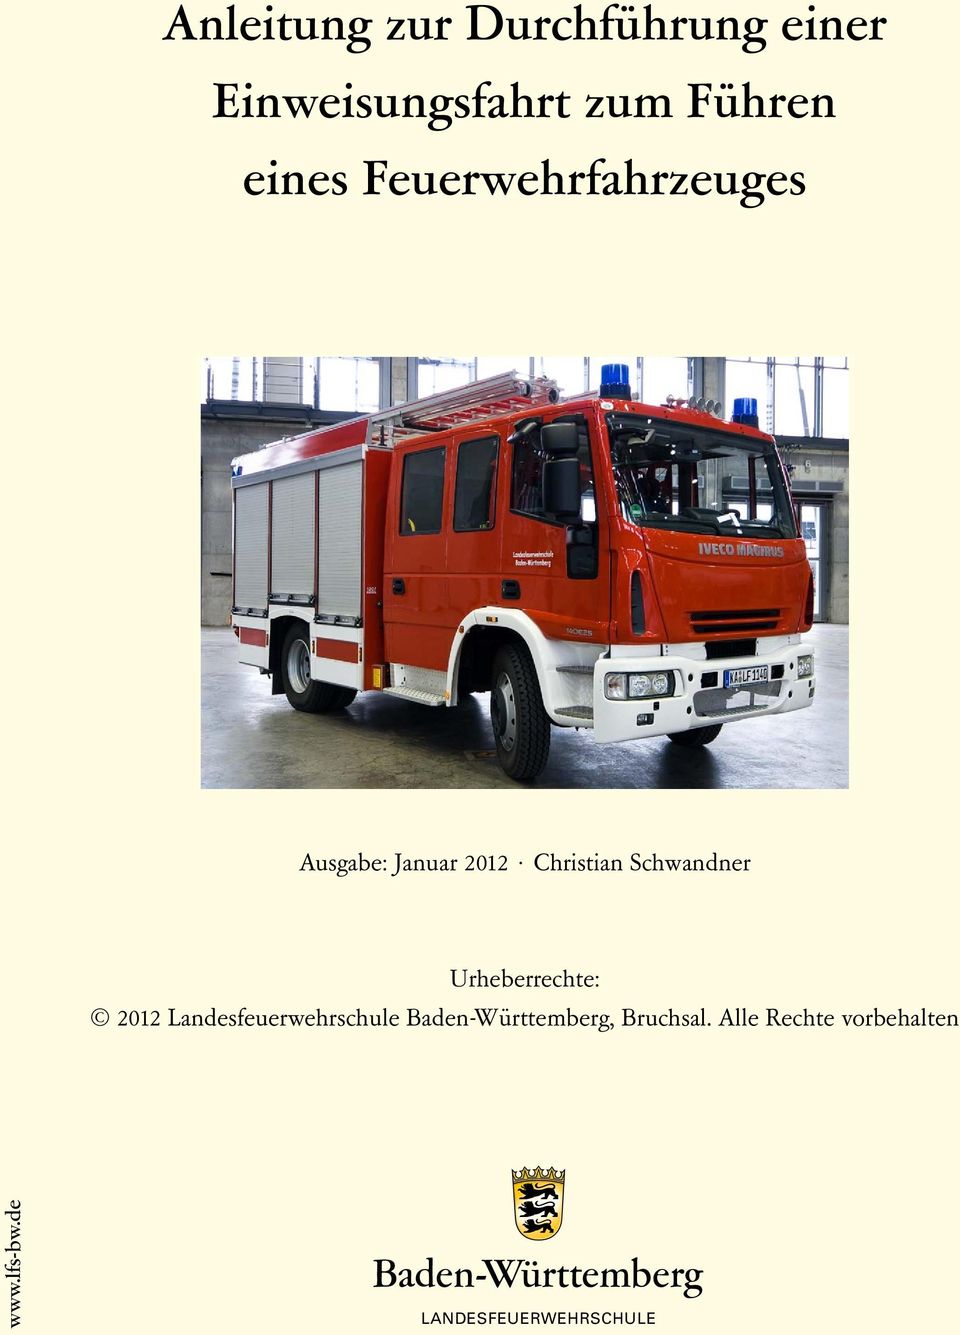 Christian Schwandner Urheberrechte: 2012, Bruchsal.